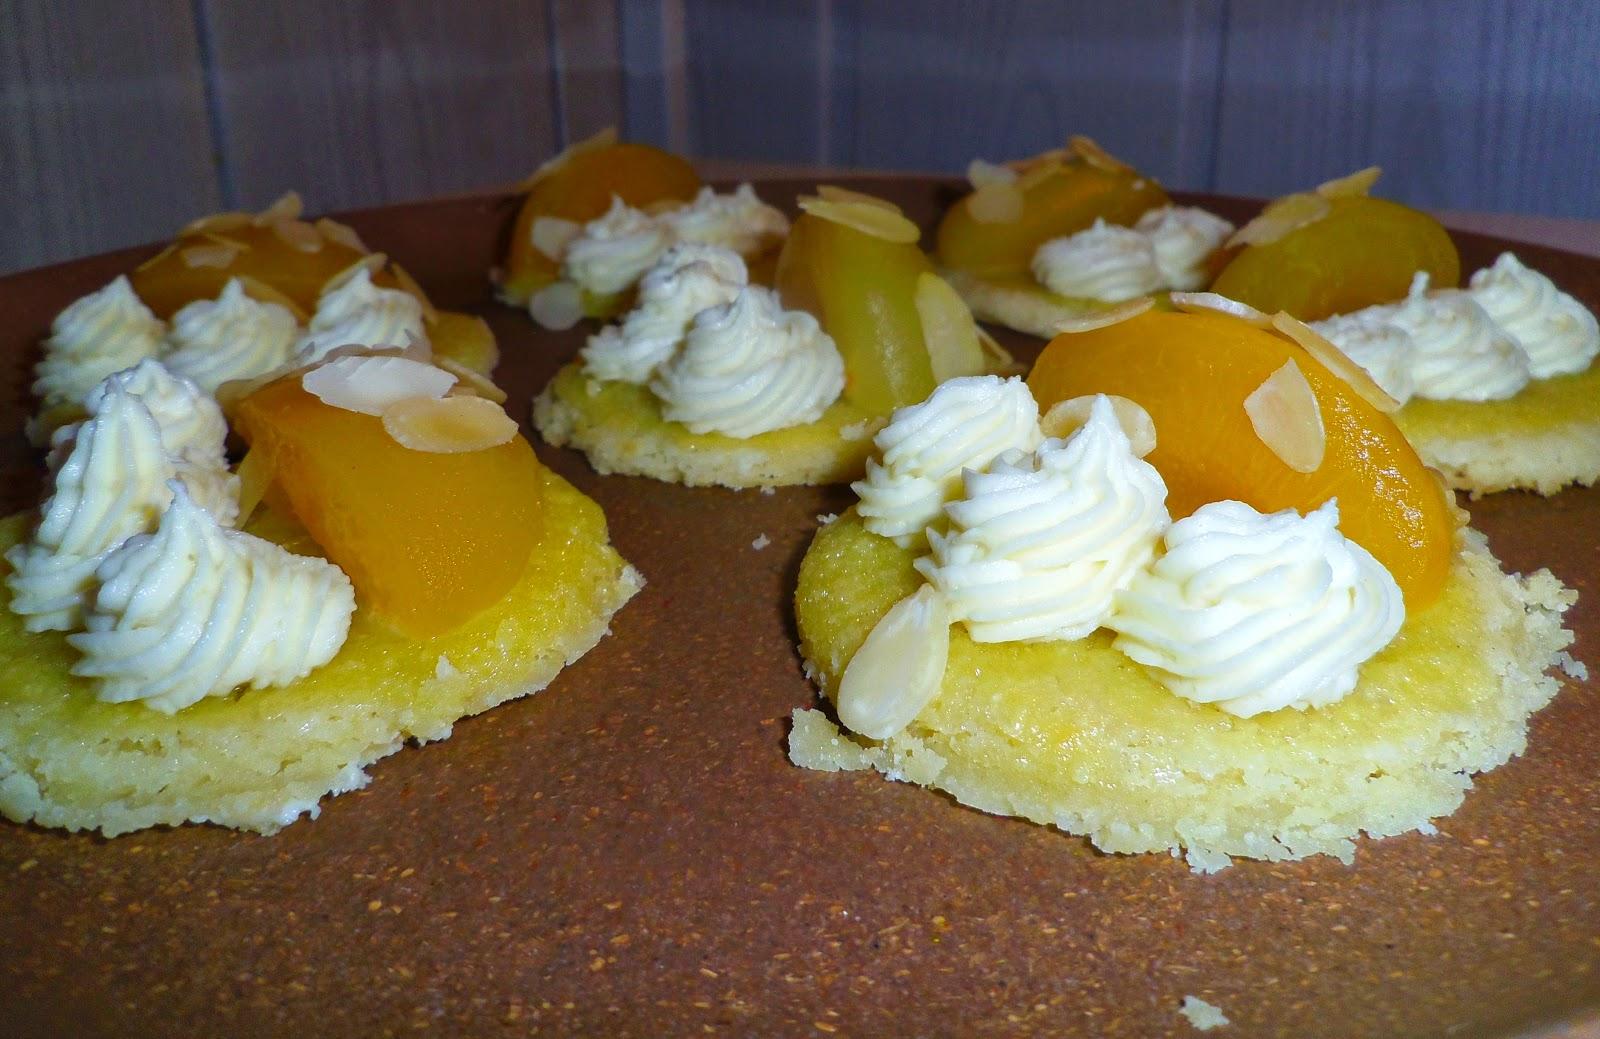 Tartelettes aux abricots rôtis et ganache montée au chocolat blanc posés sur un shortbread à la crème aux amandes :)